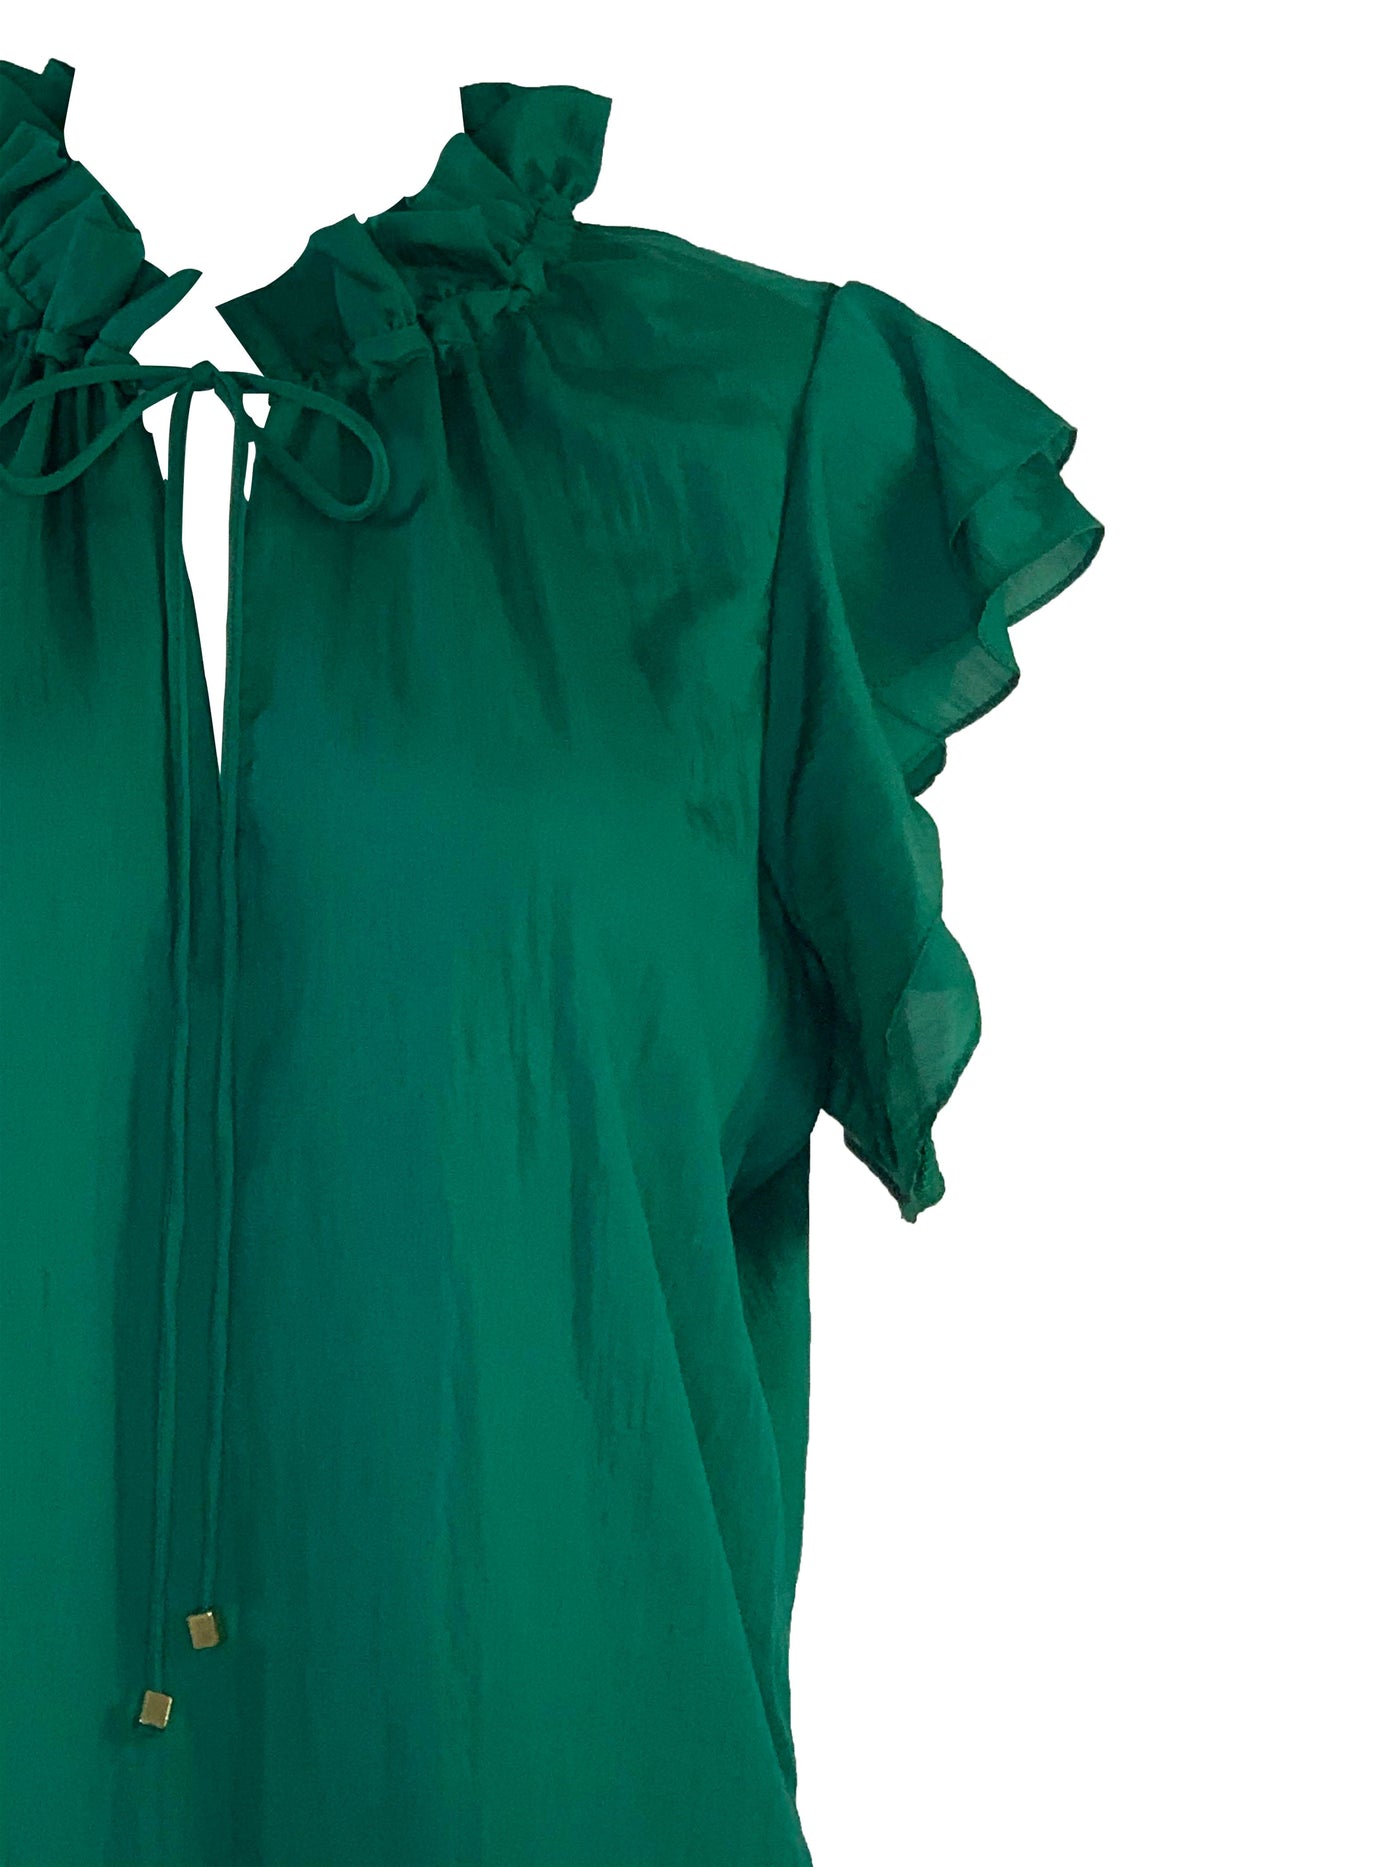 Emerald blouse by KonaCoco